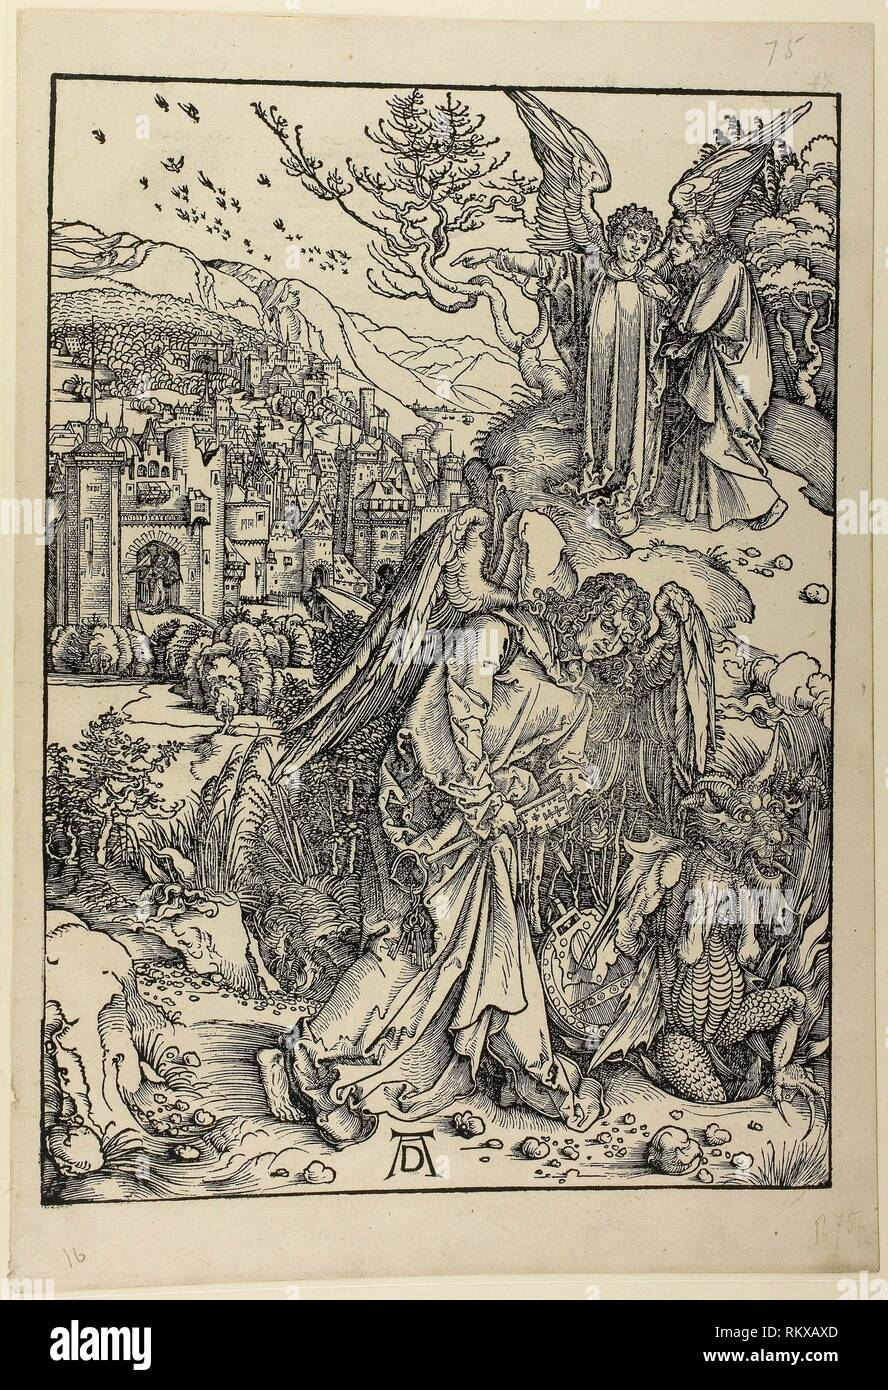 Der Engel mit den Schlüssel zum Abgrund, aus der Apokalypse - C. 1496-98;  veröffentlicht 1511 - Albrecht Dürer Deutsch, 1471-1528 - Künstler:  Albrecht Stockfotografie - Alamy